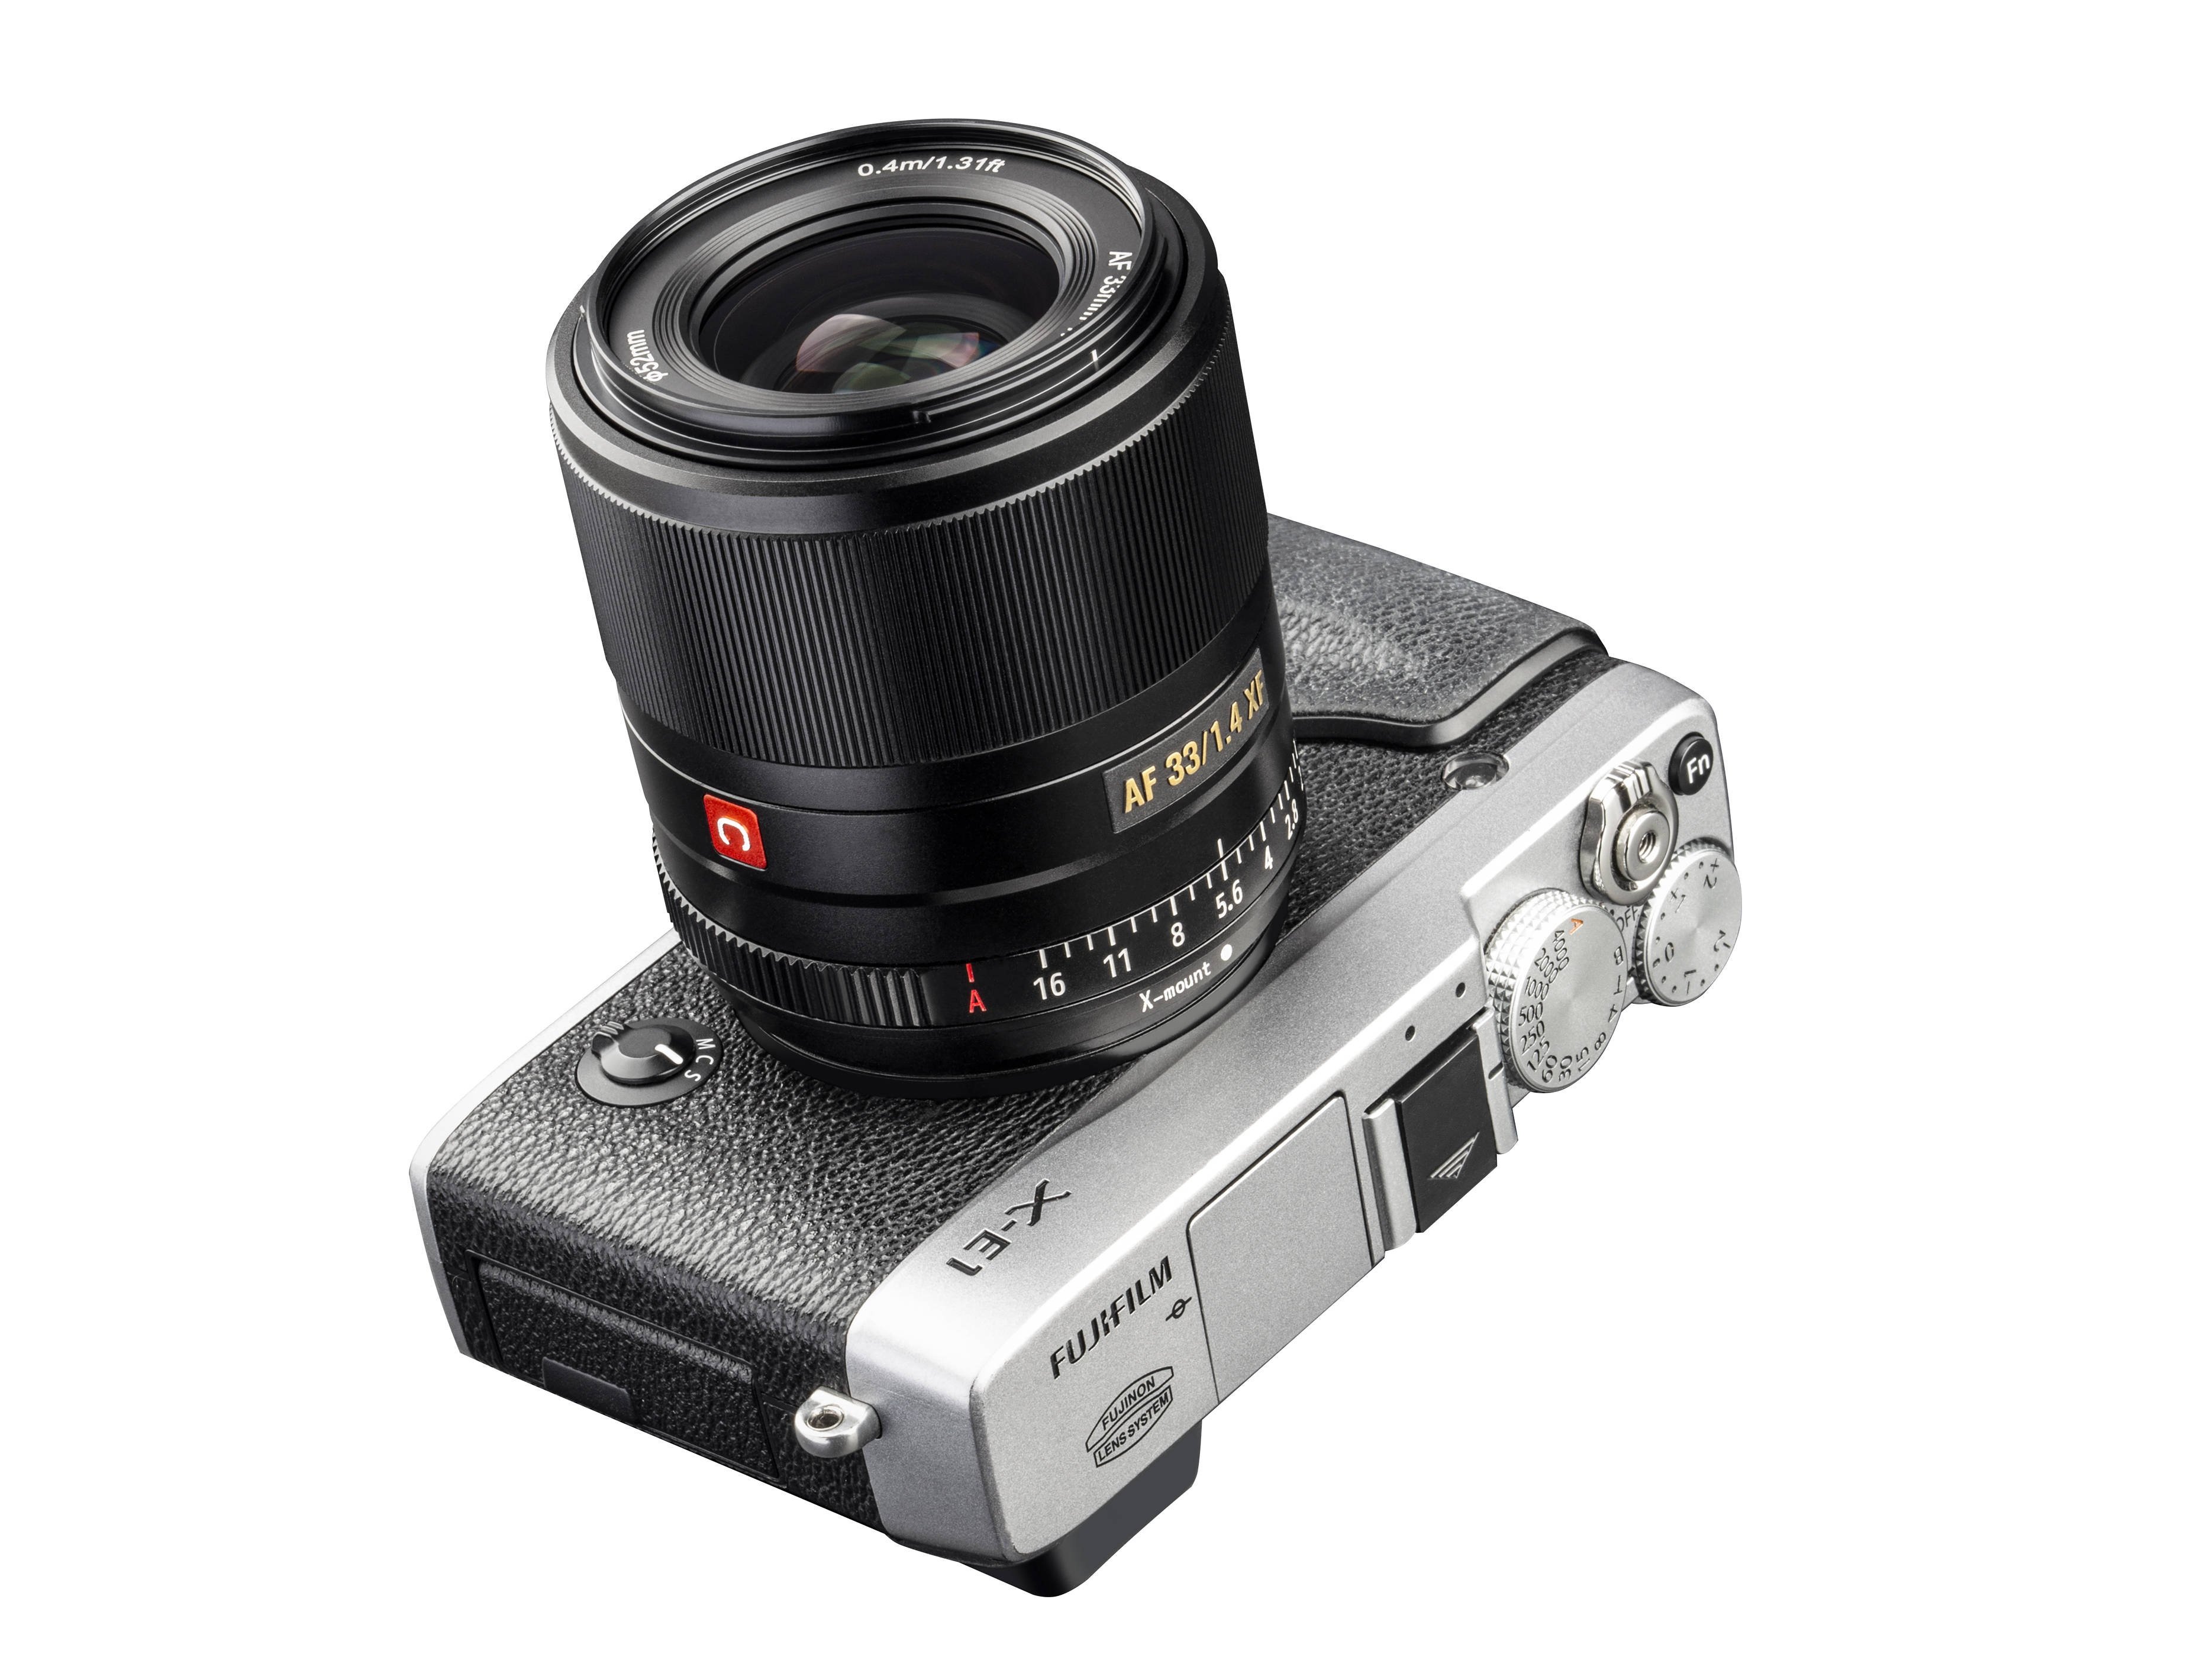 ống kính Viltrox AF 33mm f14 STM ED IF For Fujifilm lấy nét tự động nhanh, chính xác